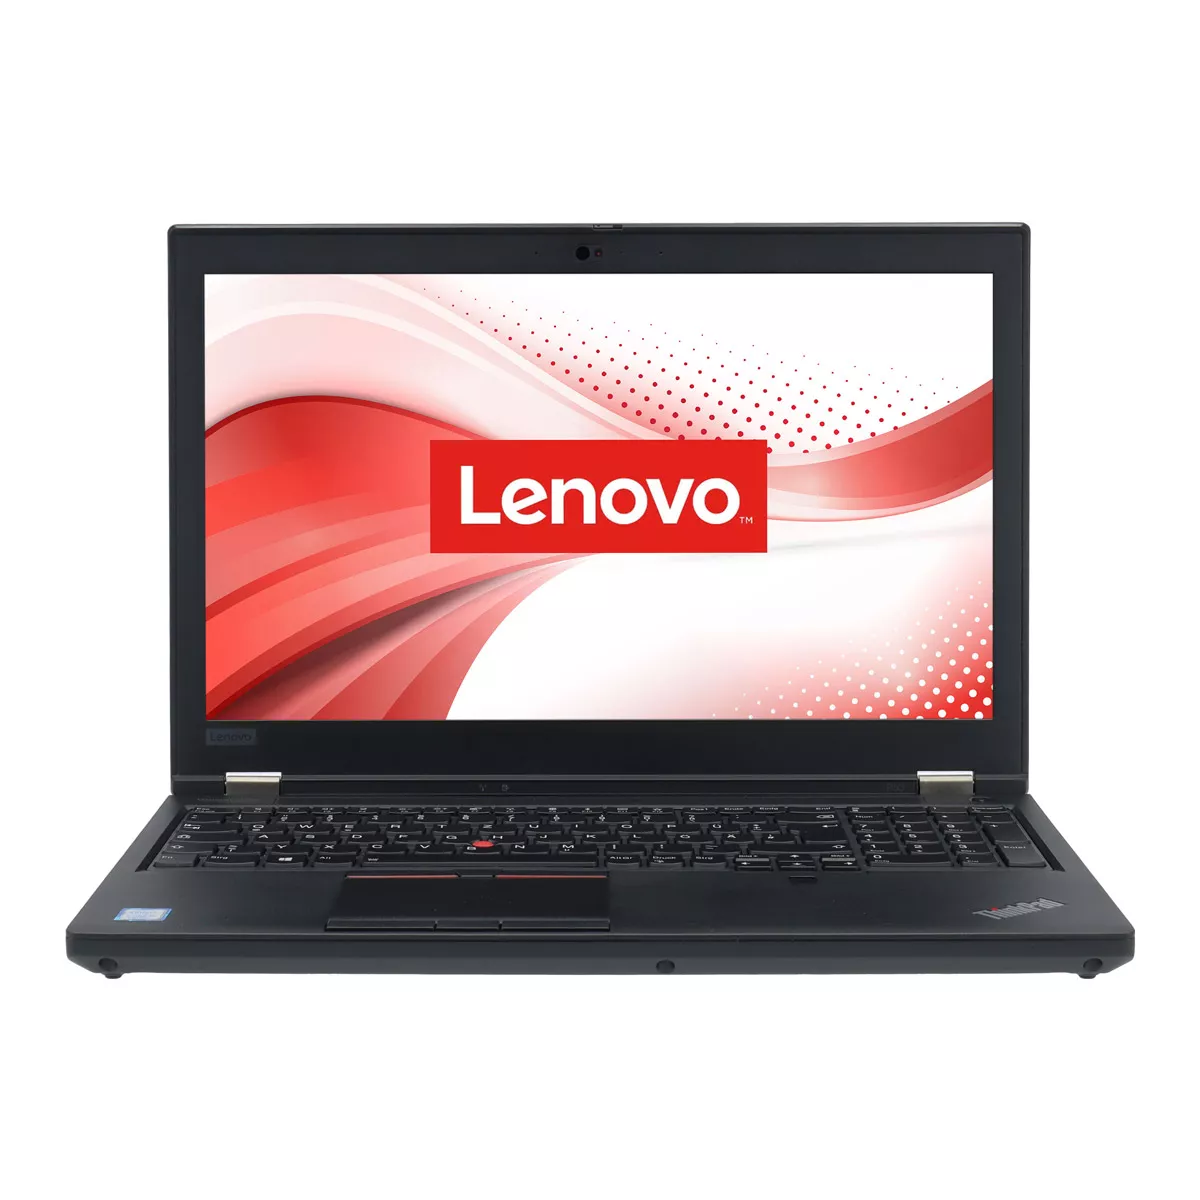 Lenovo ThinkPad P53 Core i7 9850H nVidia Quadro T2000M 32 GB 500 GB M.2 nVME SSD Webcam B